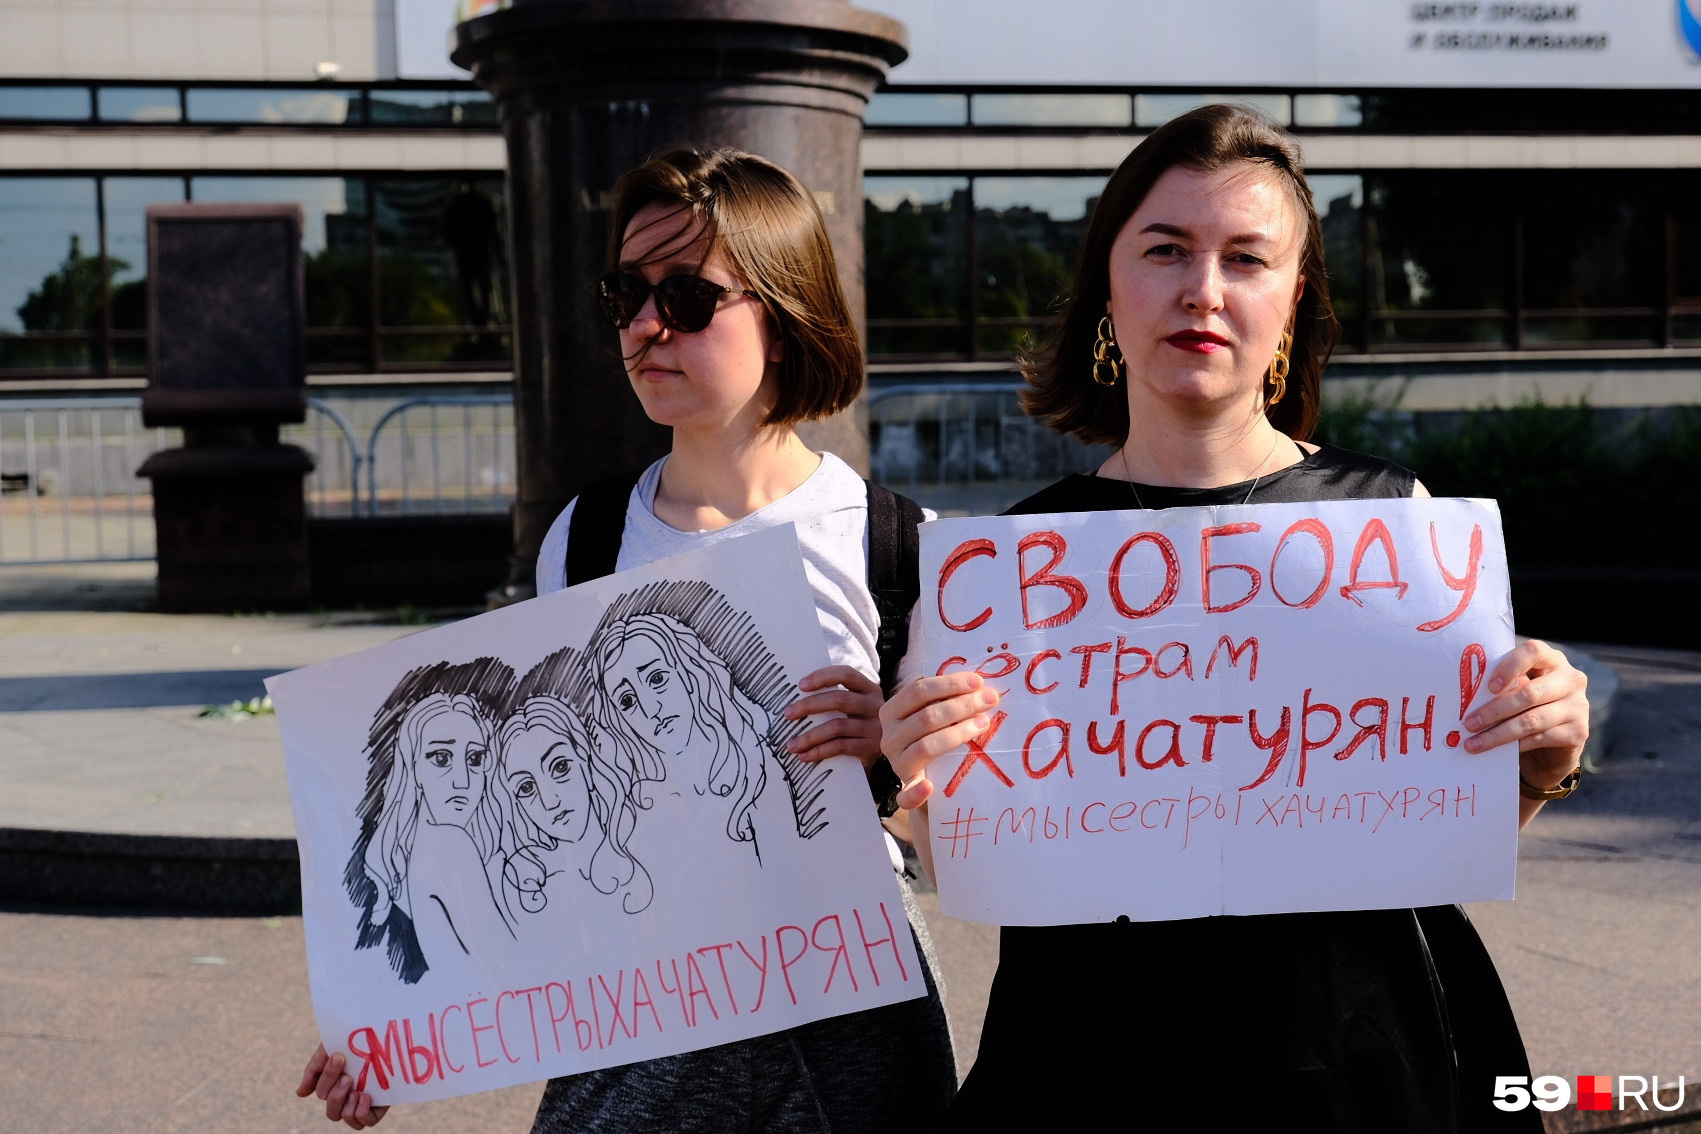 Пикеты в поддержку сестер проводили во многих городах России (на фото — <a href="https://59.ru/text/world/2019/07/10/66156274/" class="_ io-leave-page" target="_blank">пикет в Перми</a> в июле 2019 года)